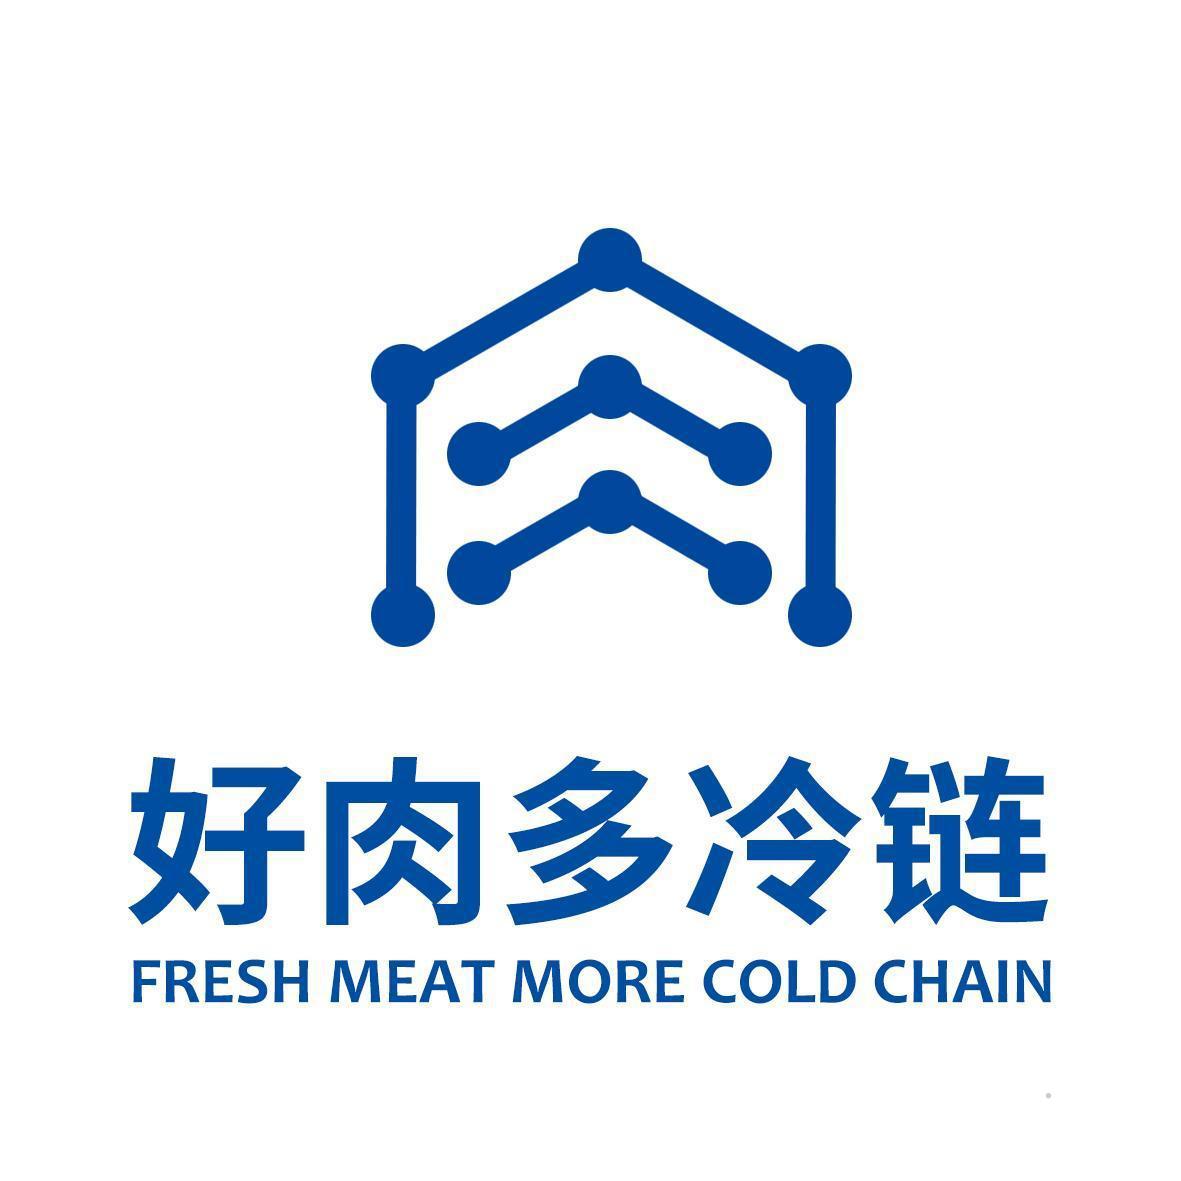 好肉多冷链 FRESH MEAT MORE COLD CHAIN 金融物管